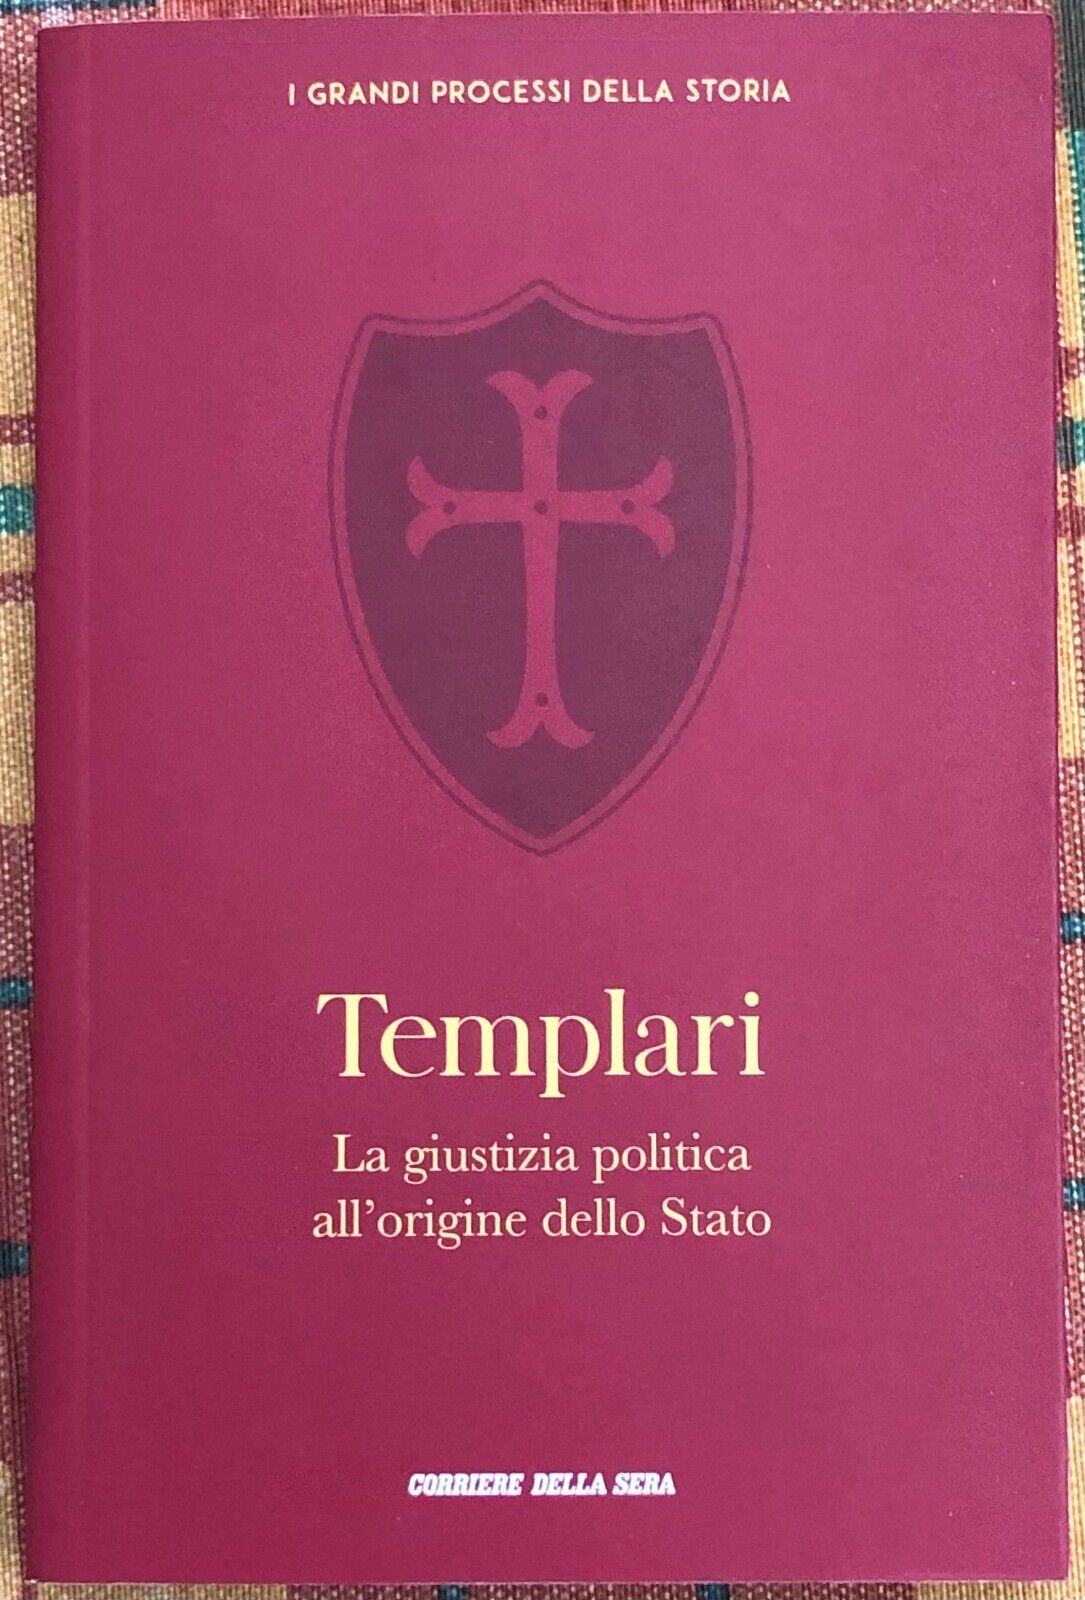 I grandi processi della storia n. 26 - Templari. La giustizia politica alL'origi